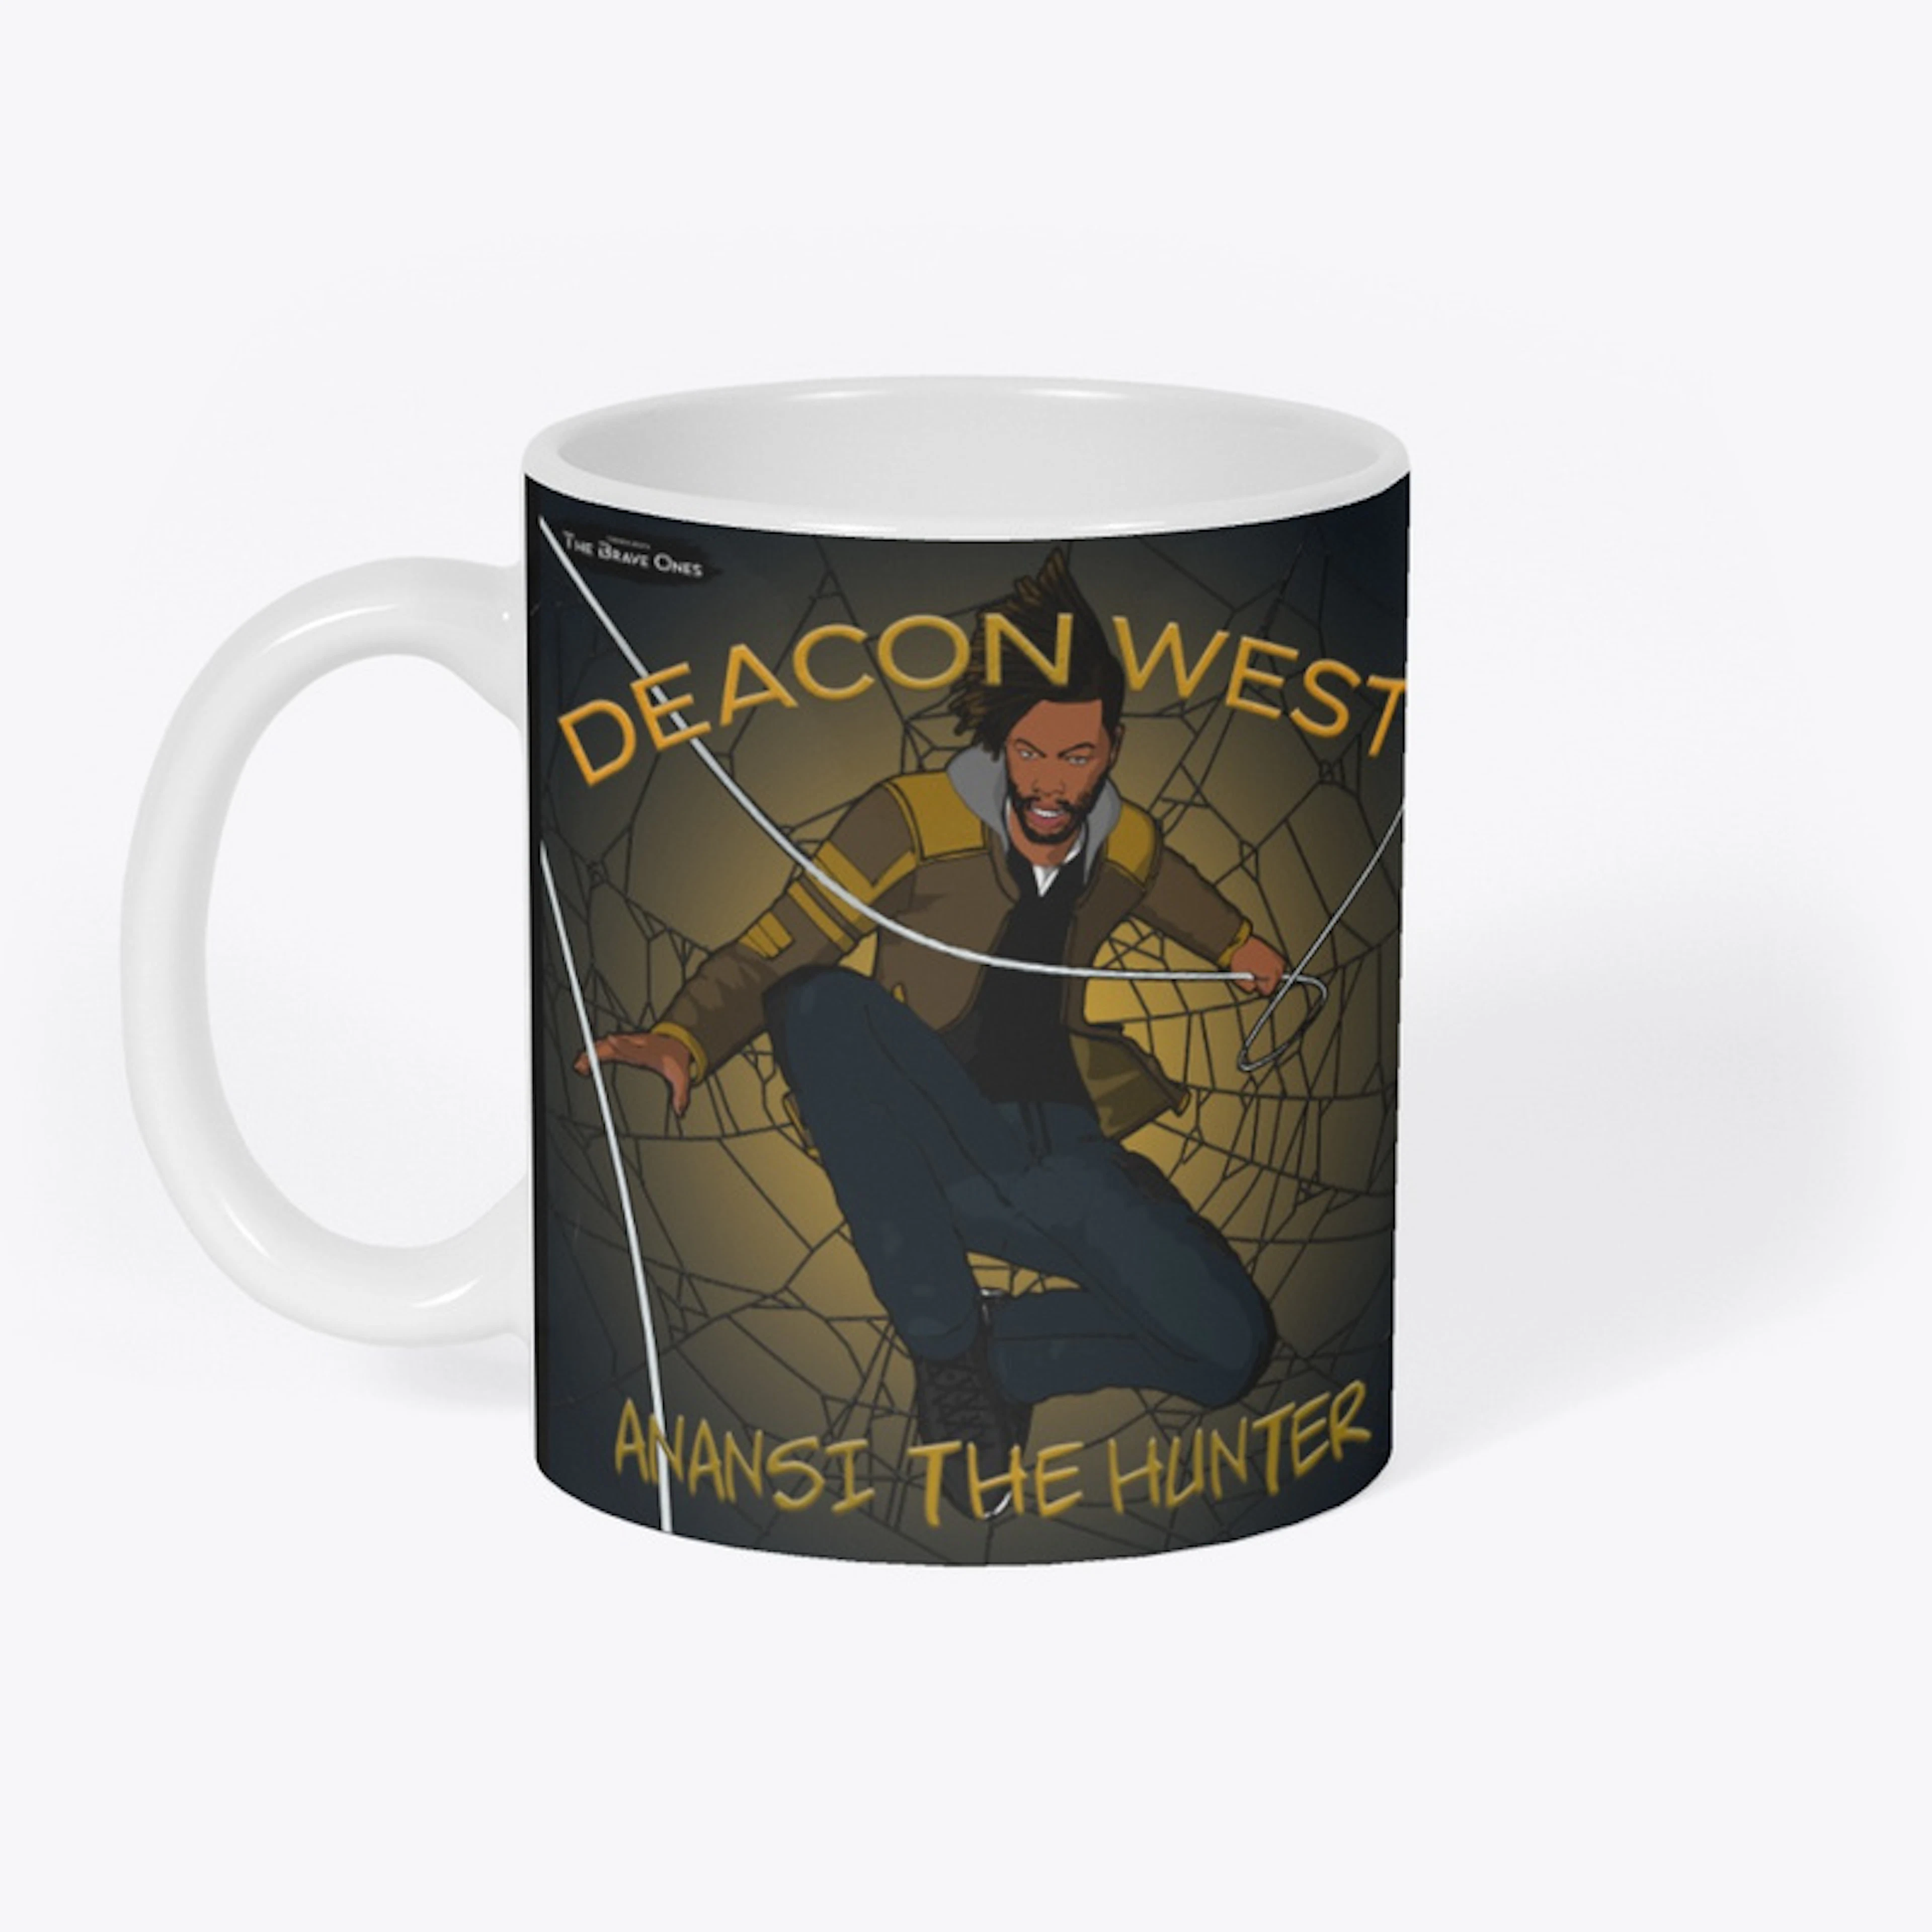 Deacon West 